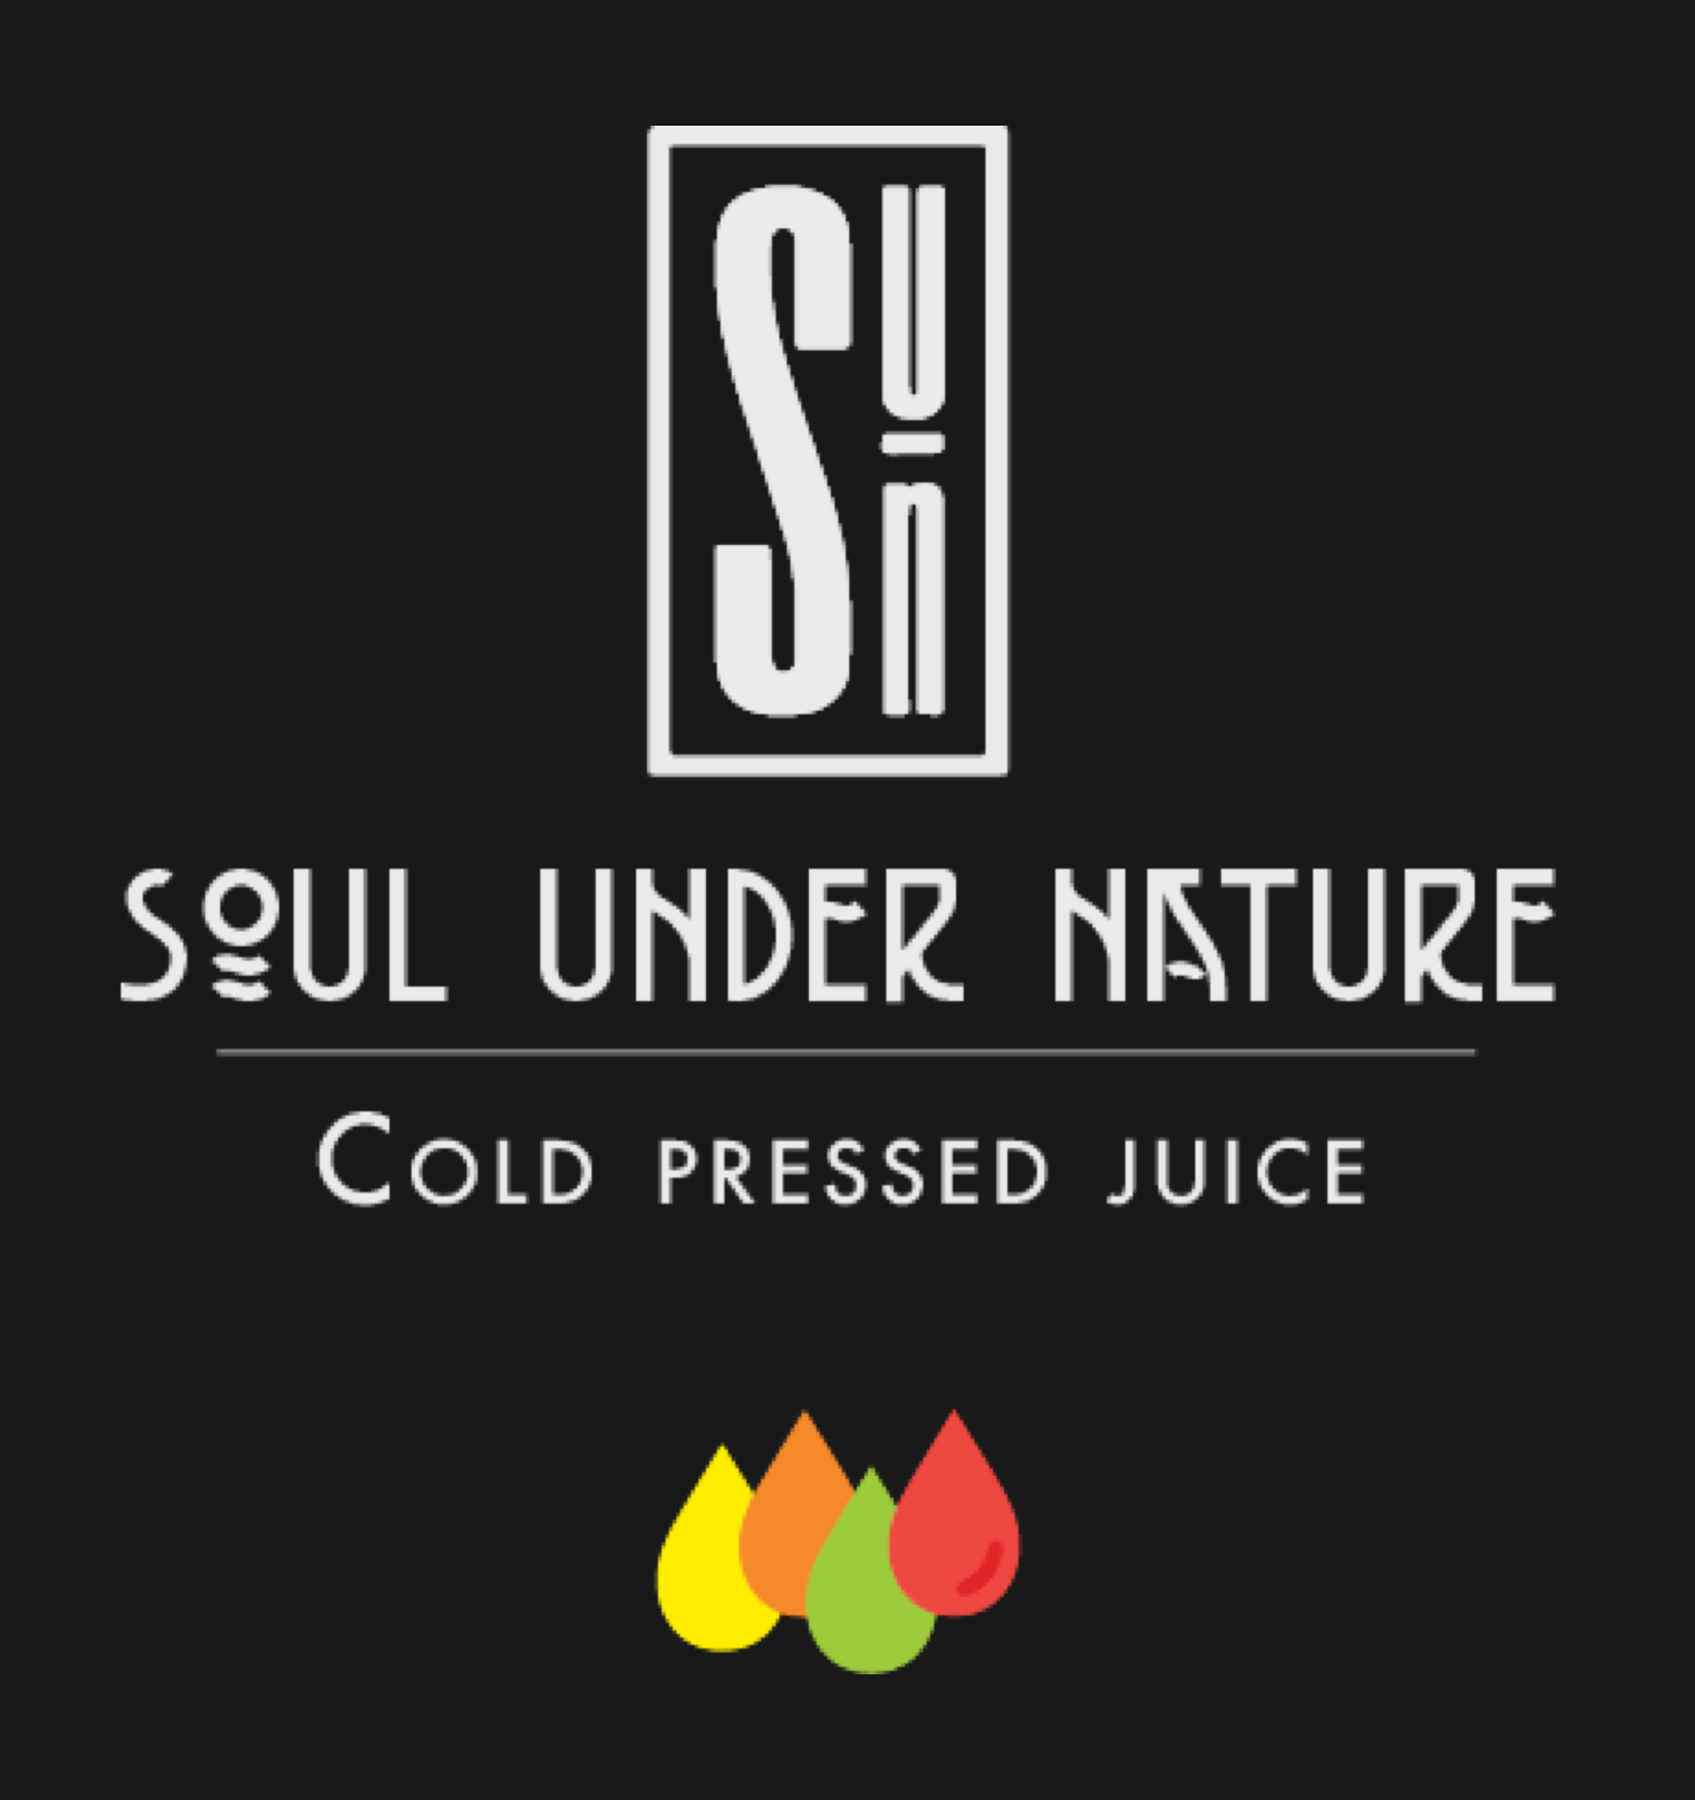 Soul Under Nature Juices